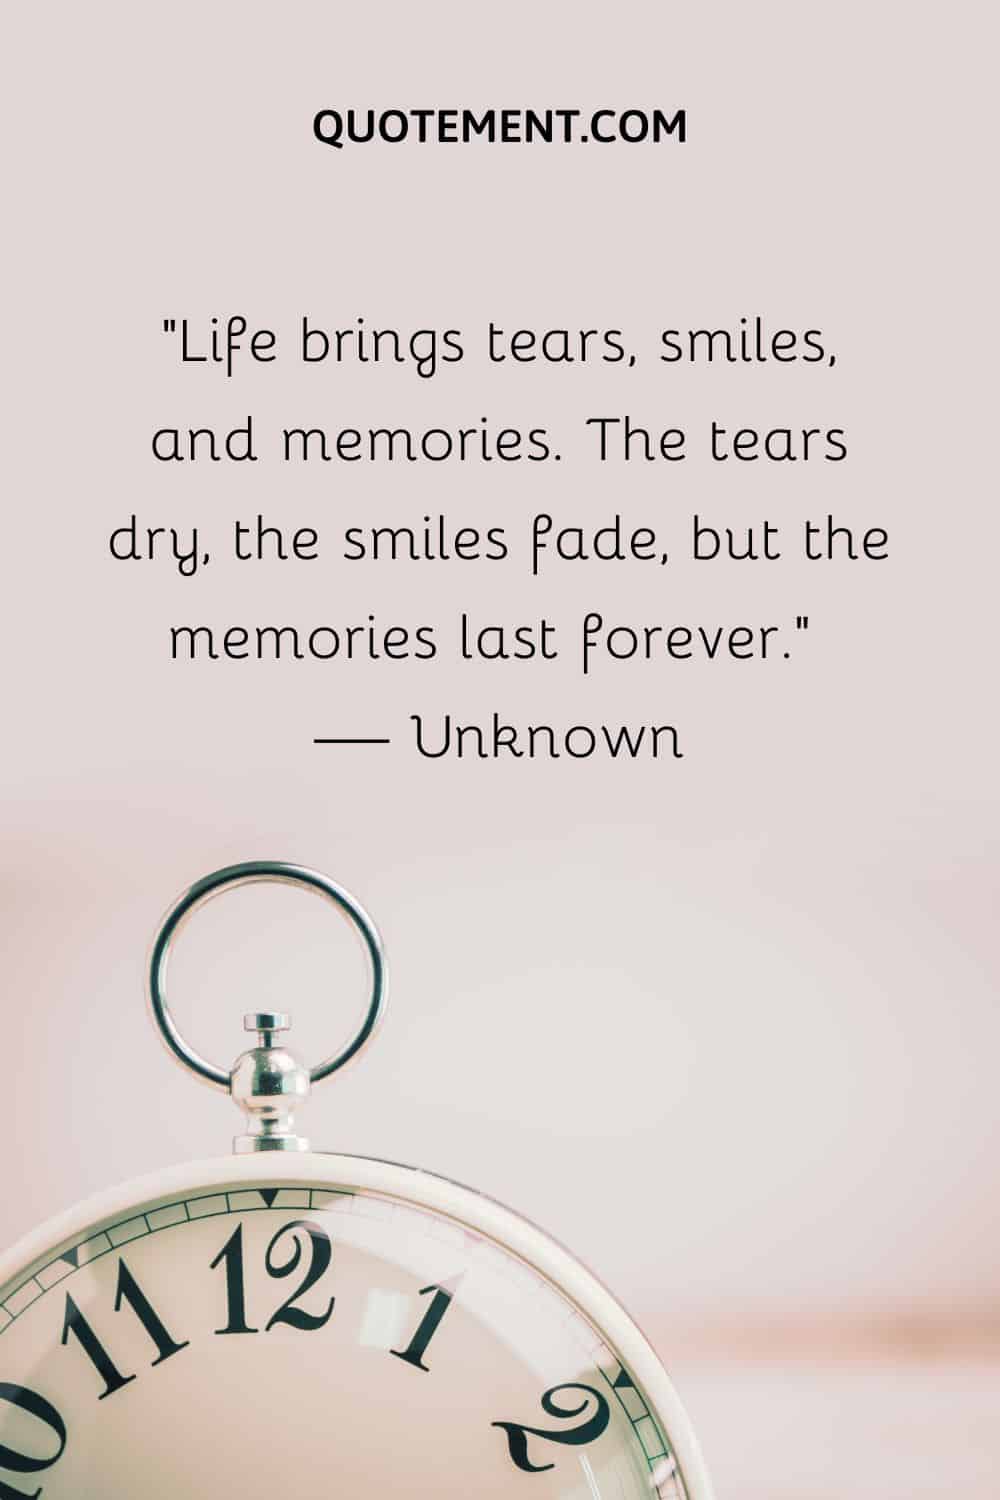 Life brings tears, smiles, and memories